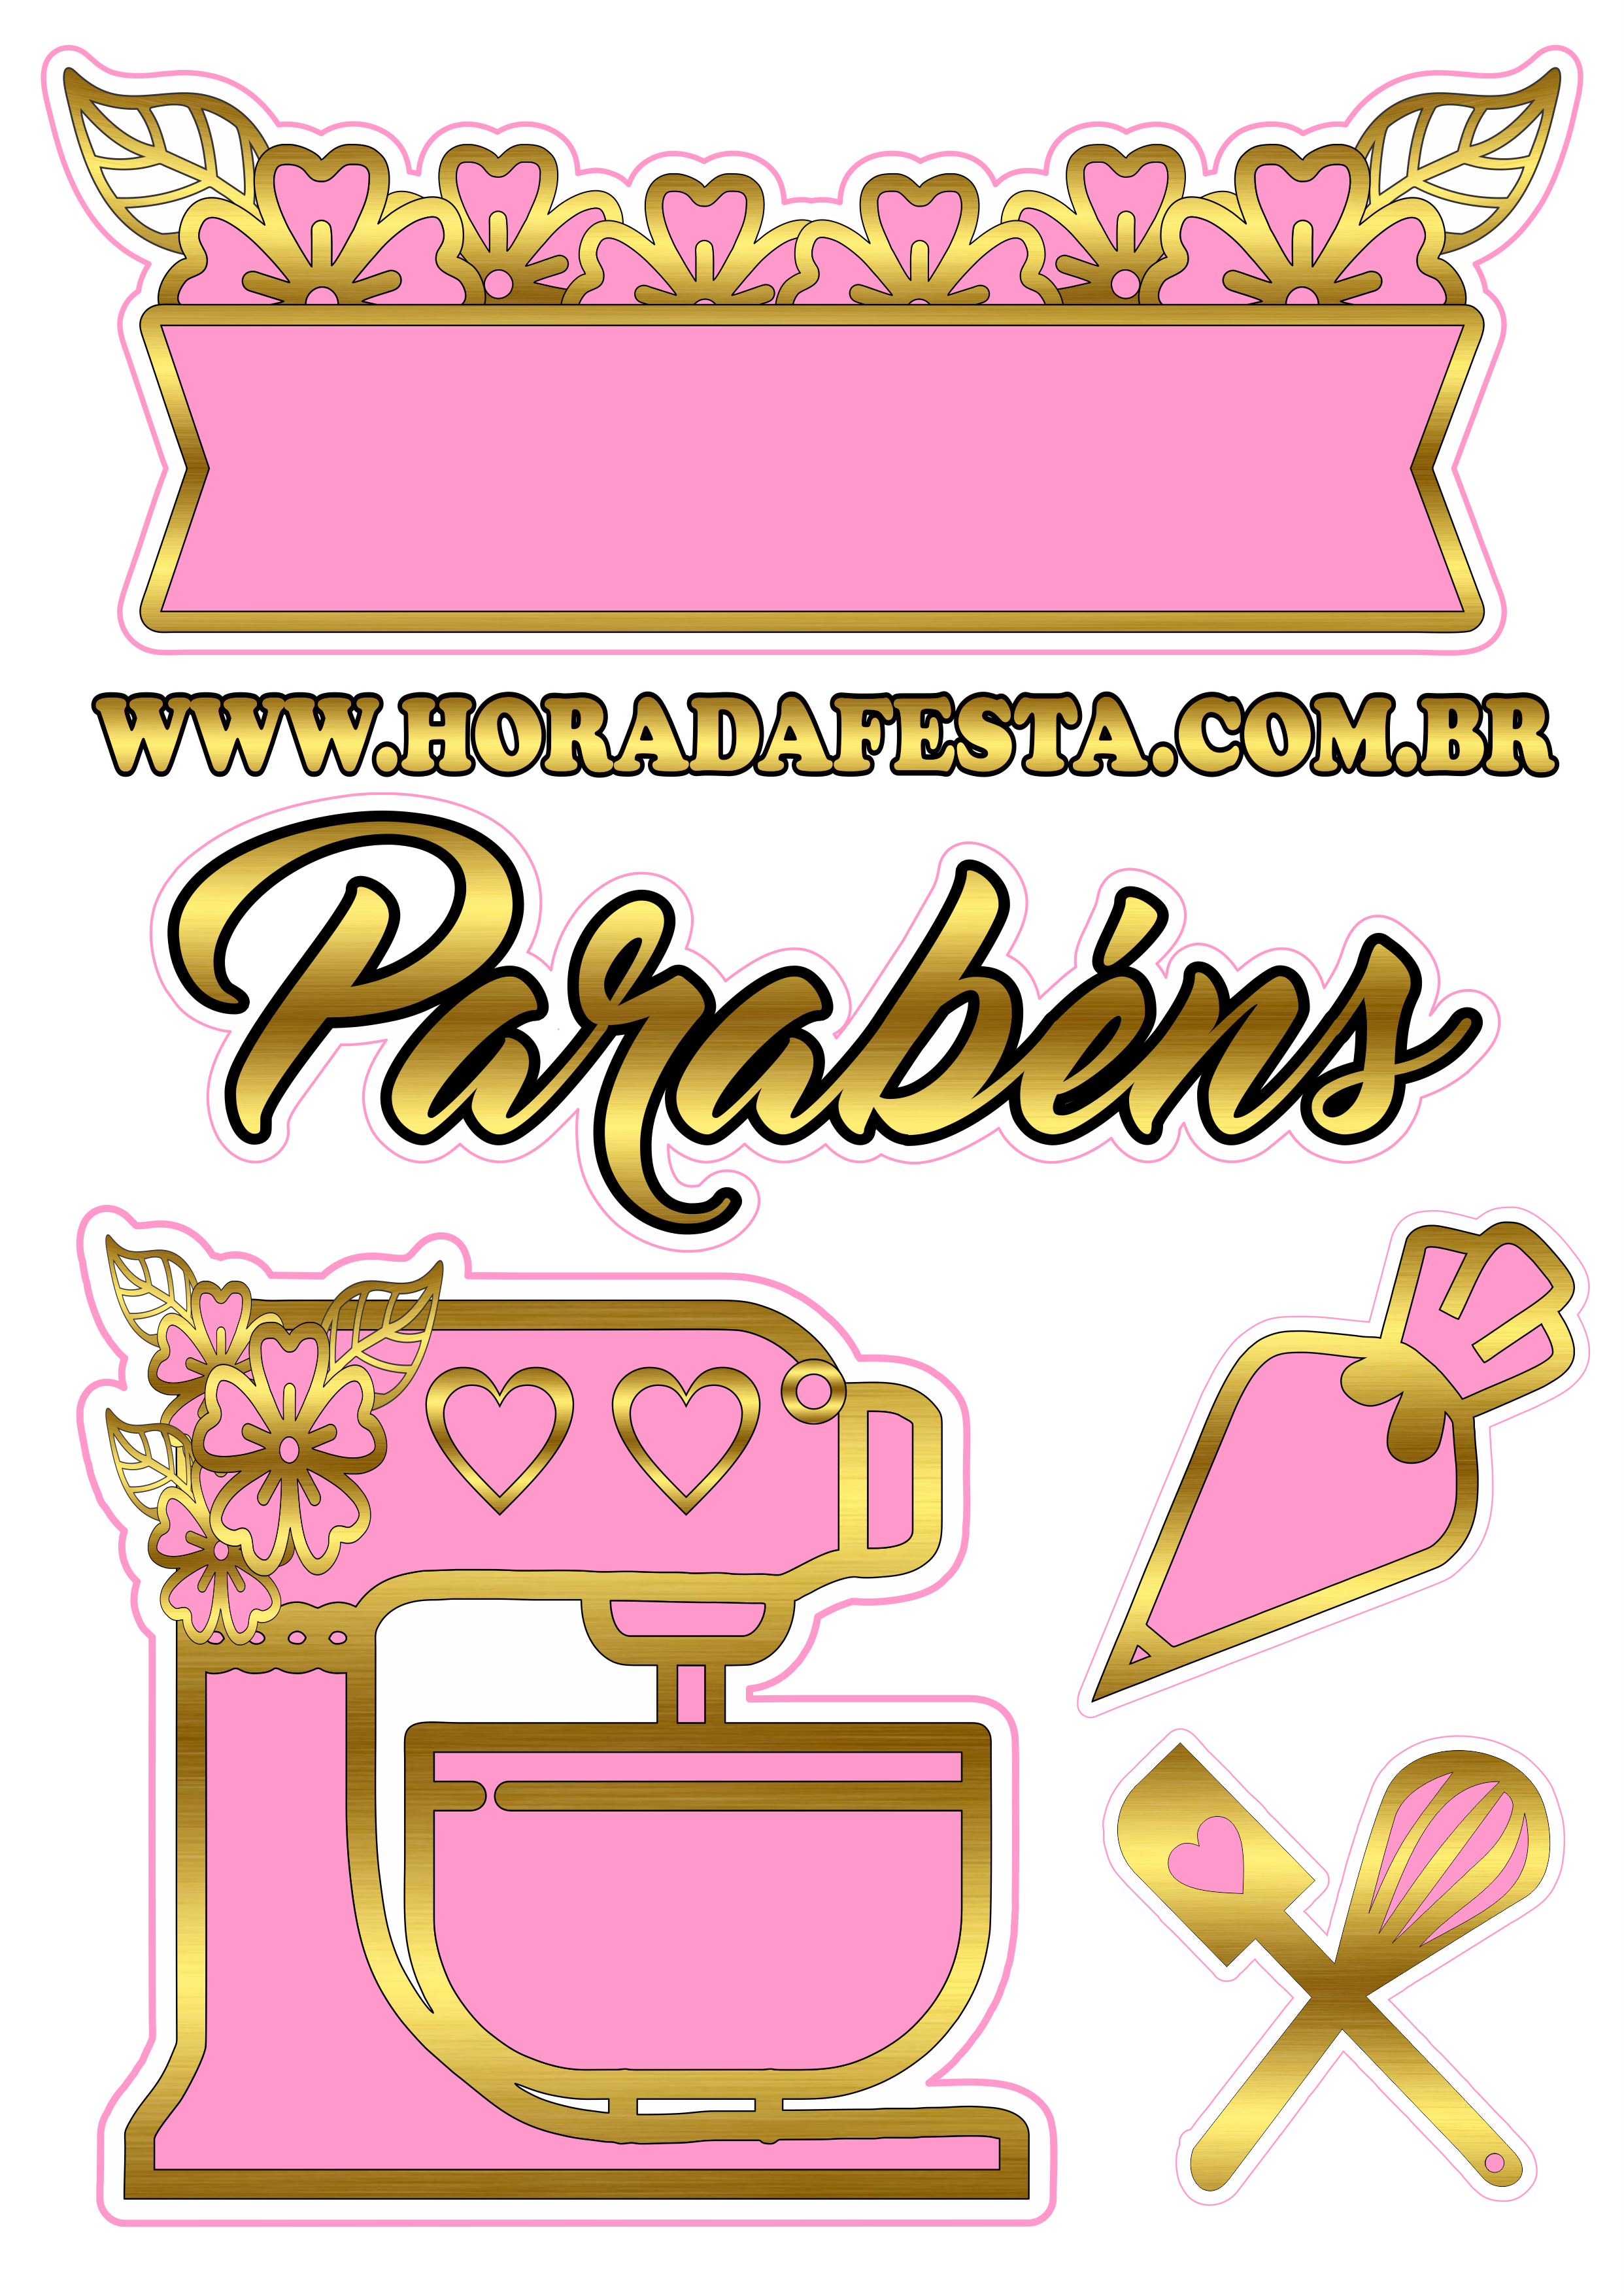 Topo de bolo tema confeiteira rosa com dourado pronto para imprimir parabéns png